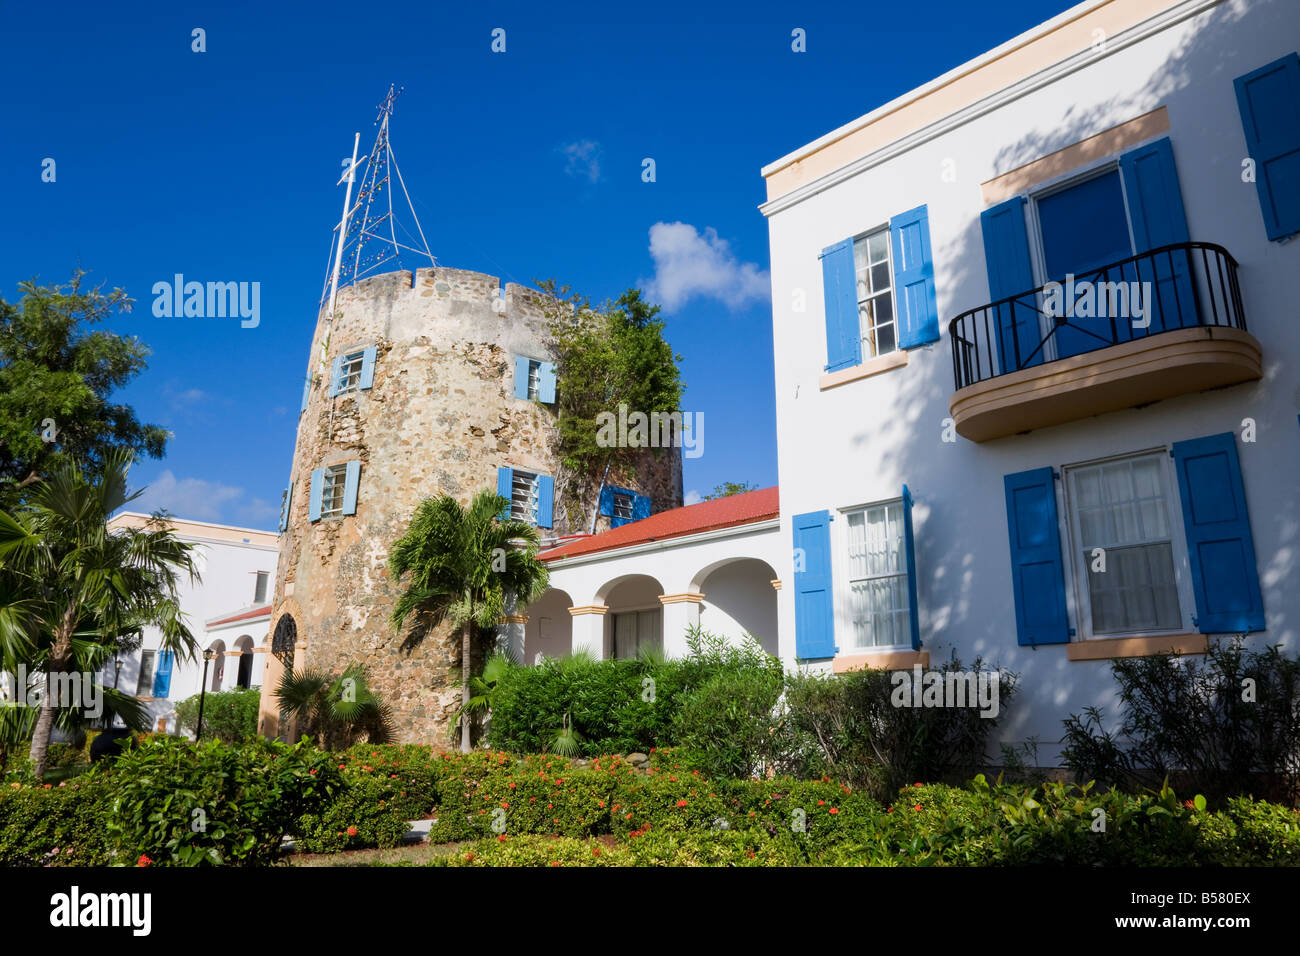 Blaubärten Burg, Charlotte Amalie, St. Thomas, Amerikanische Jungferninseln, Karibik, Karibik, Mittelamerika Stockfoto